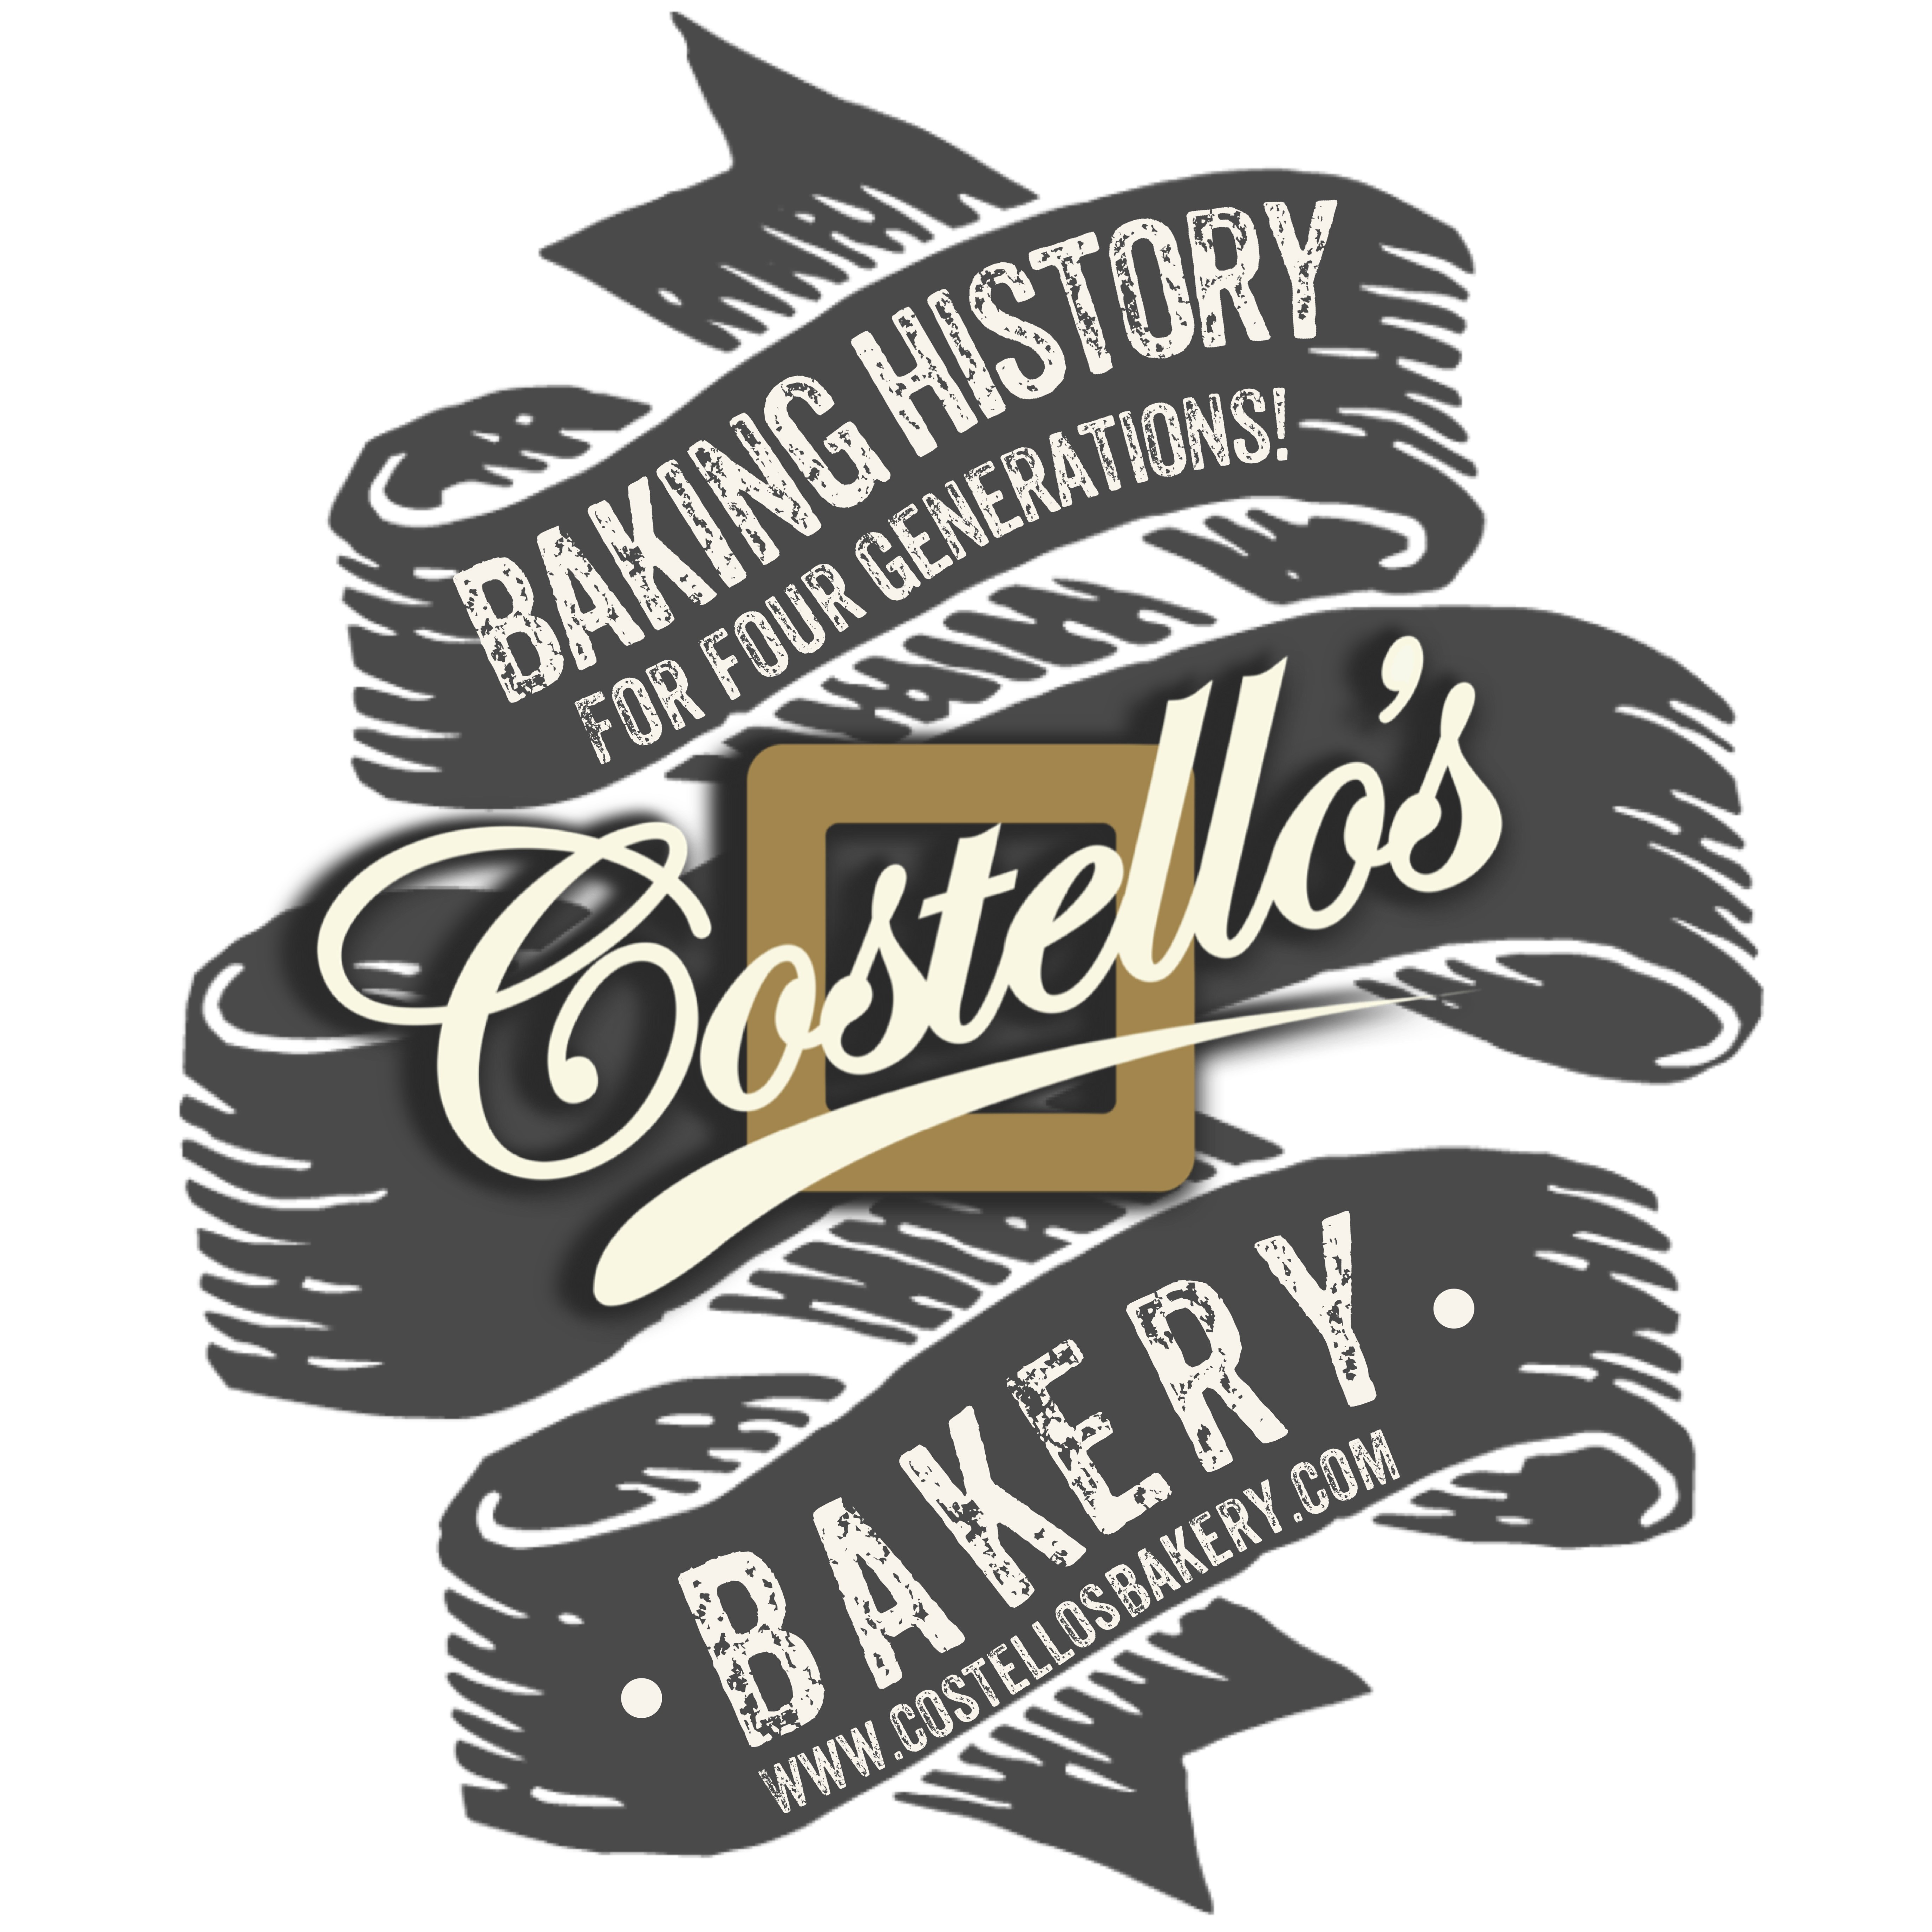 Costello's Bakery logo